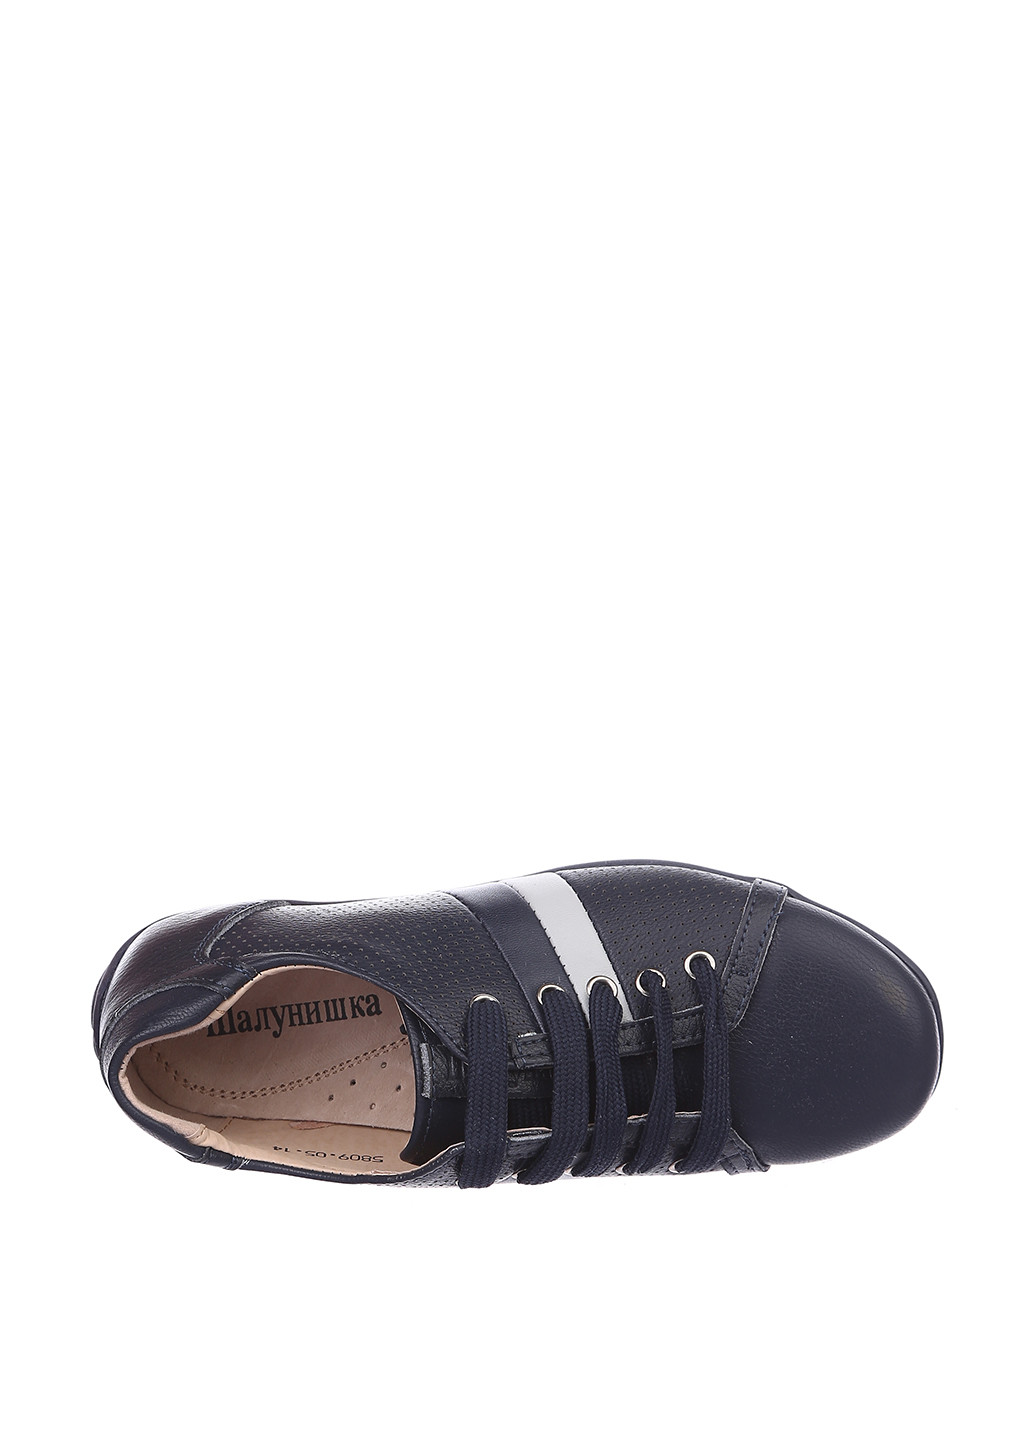 Темно-синие спортивные туфли Шалунишка на шнурках